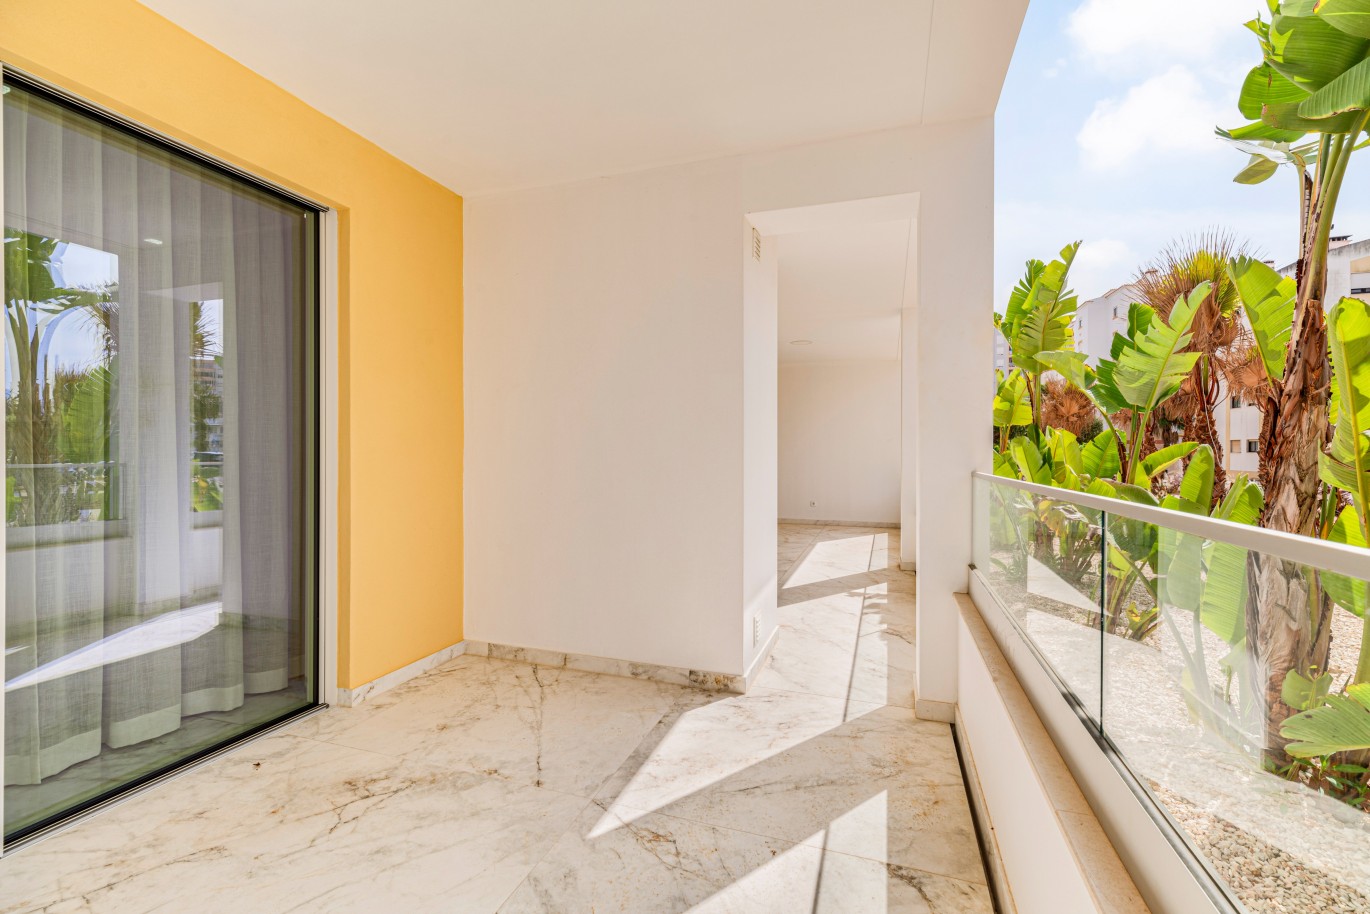 Verkauf einer Wohnung im Bau, mit Terrasse, Lagos, Algarve, Portugal_238001